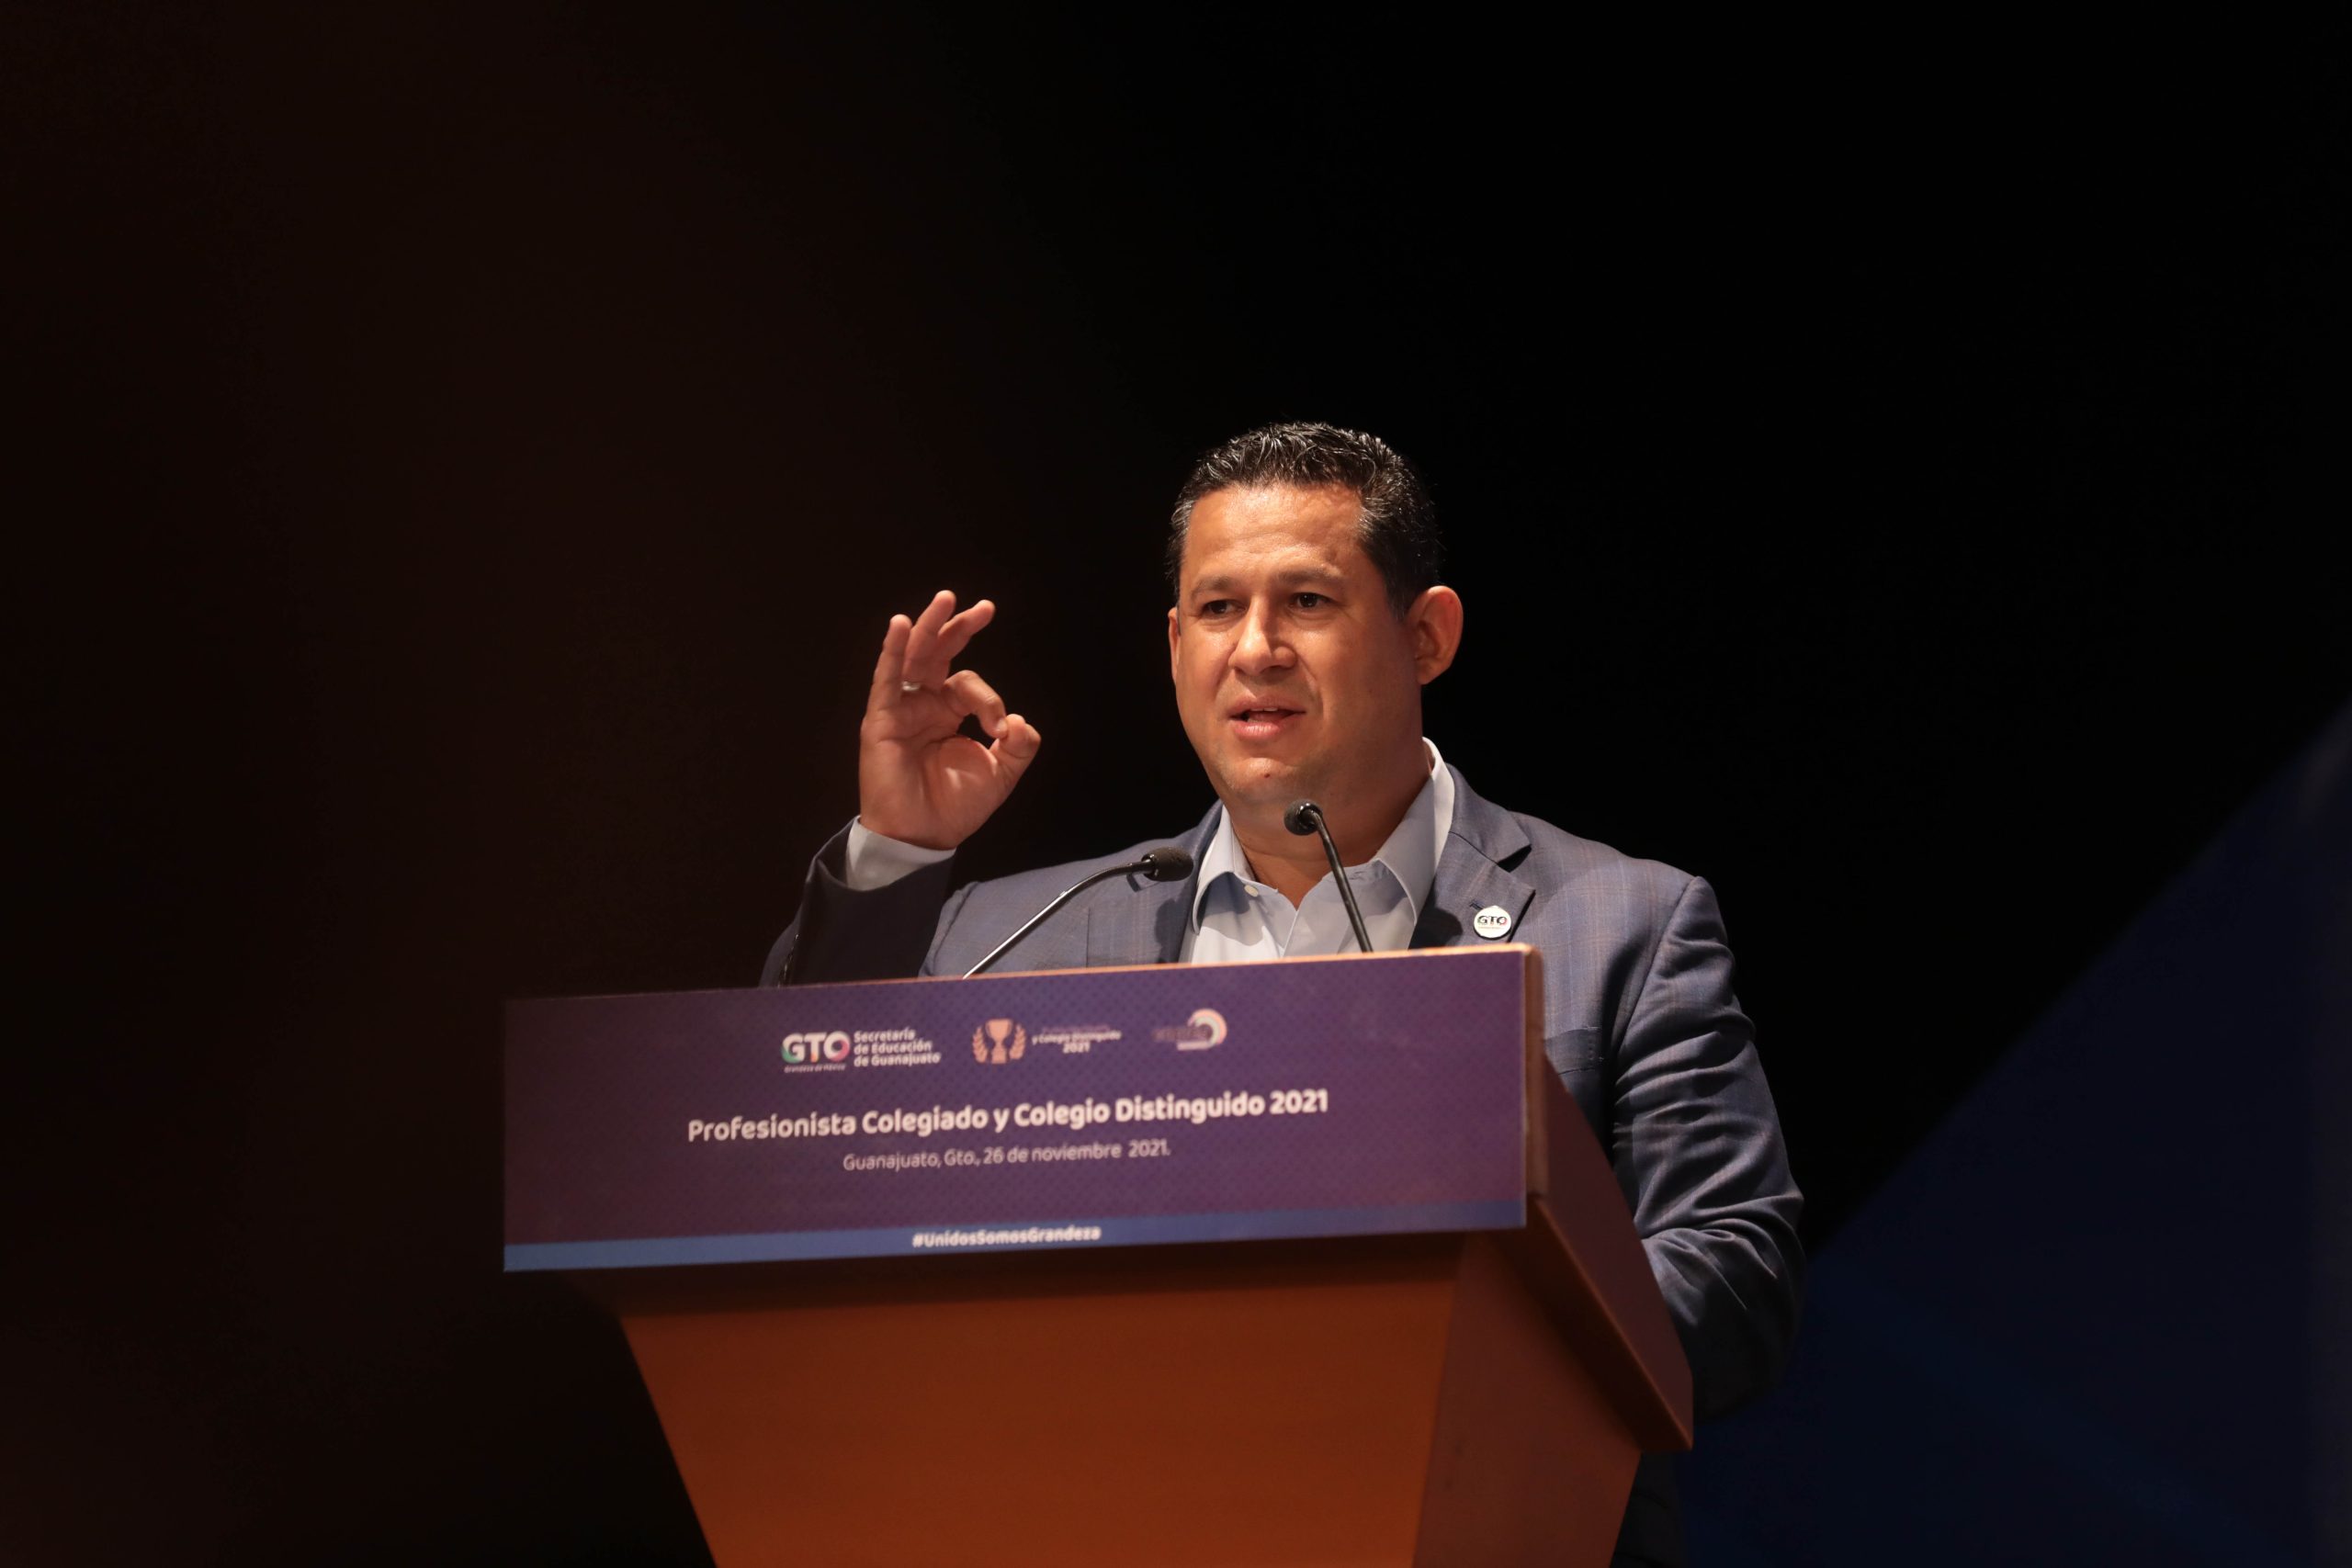 Los profesionistas son el motor de la economía de Guanajuato: Diego Sinhue Rodríguez